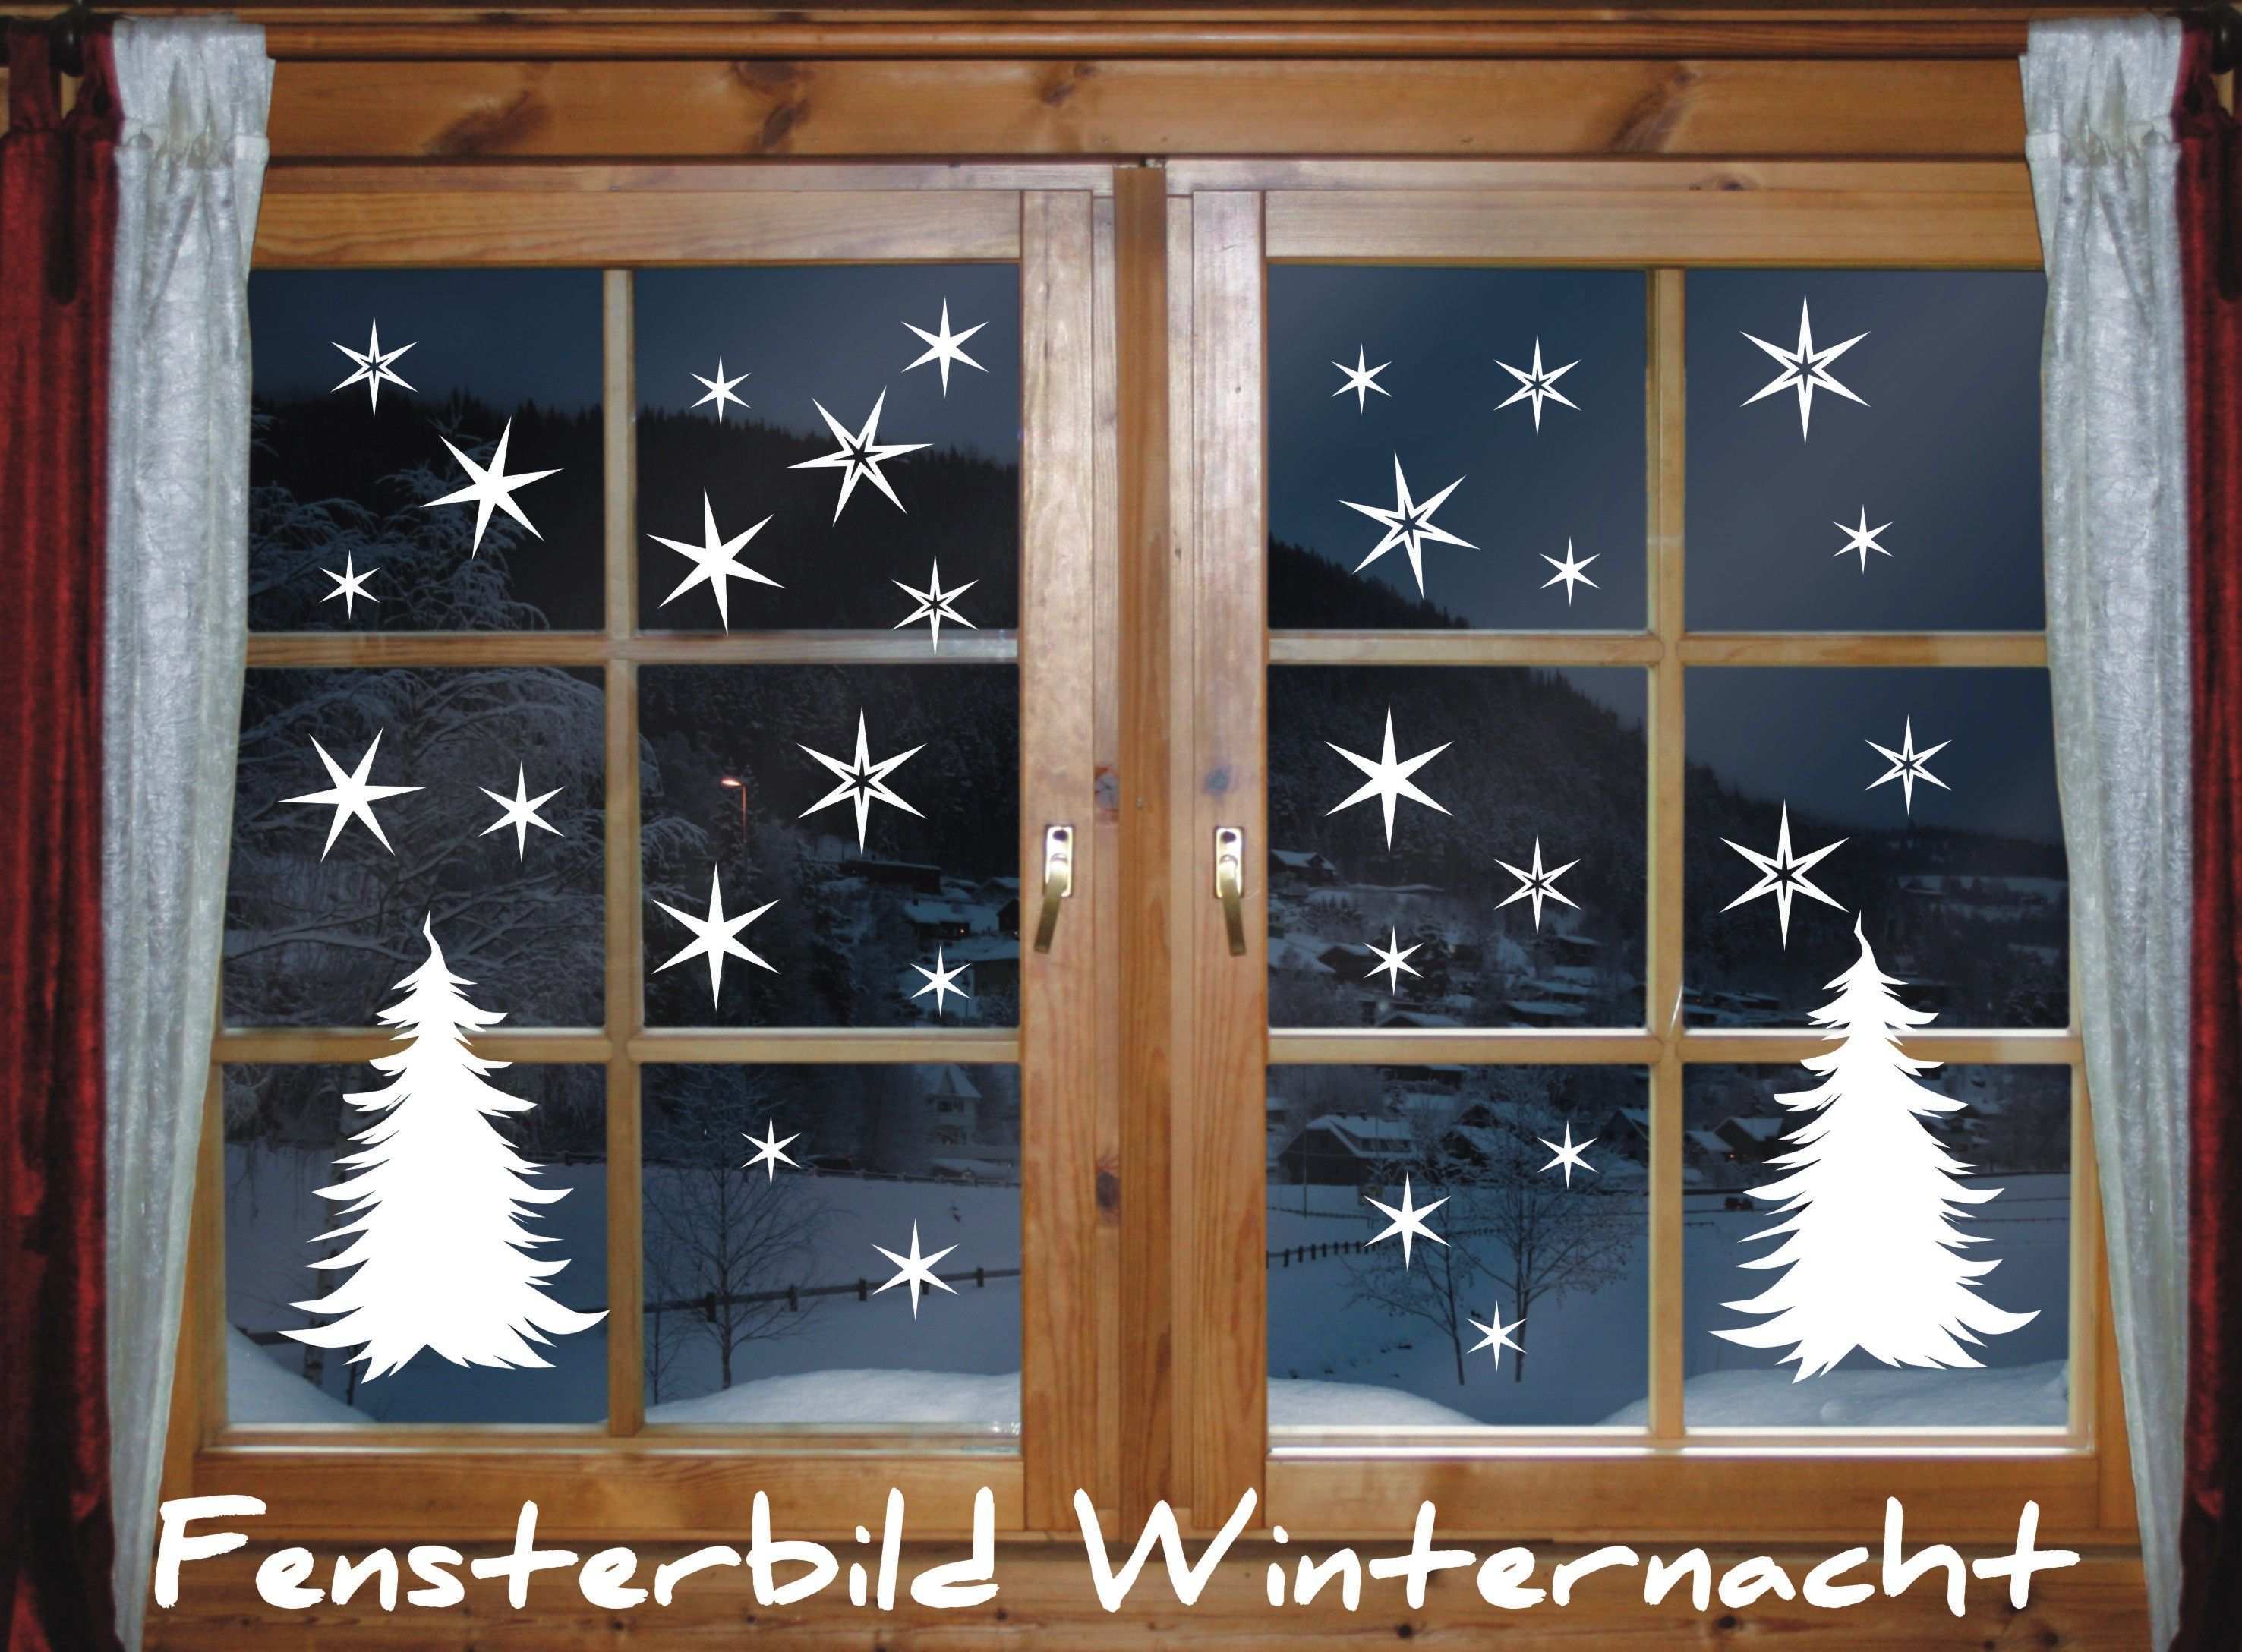 Fenstertattoo 40 X Sterne Tannenbaum Winternacht Weihnachten Winternacht Fensterbild Sterne Weihnachten Fensterbilder Weihnachten Weihnachtsdekoration